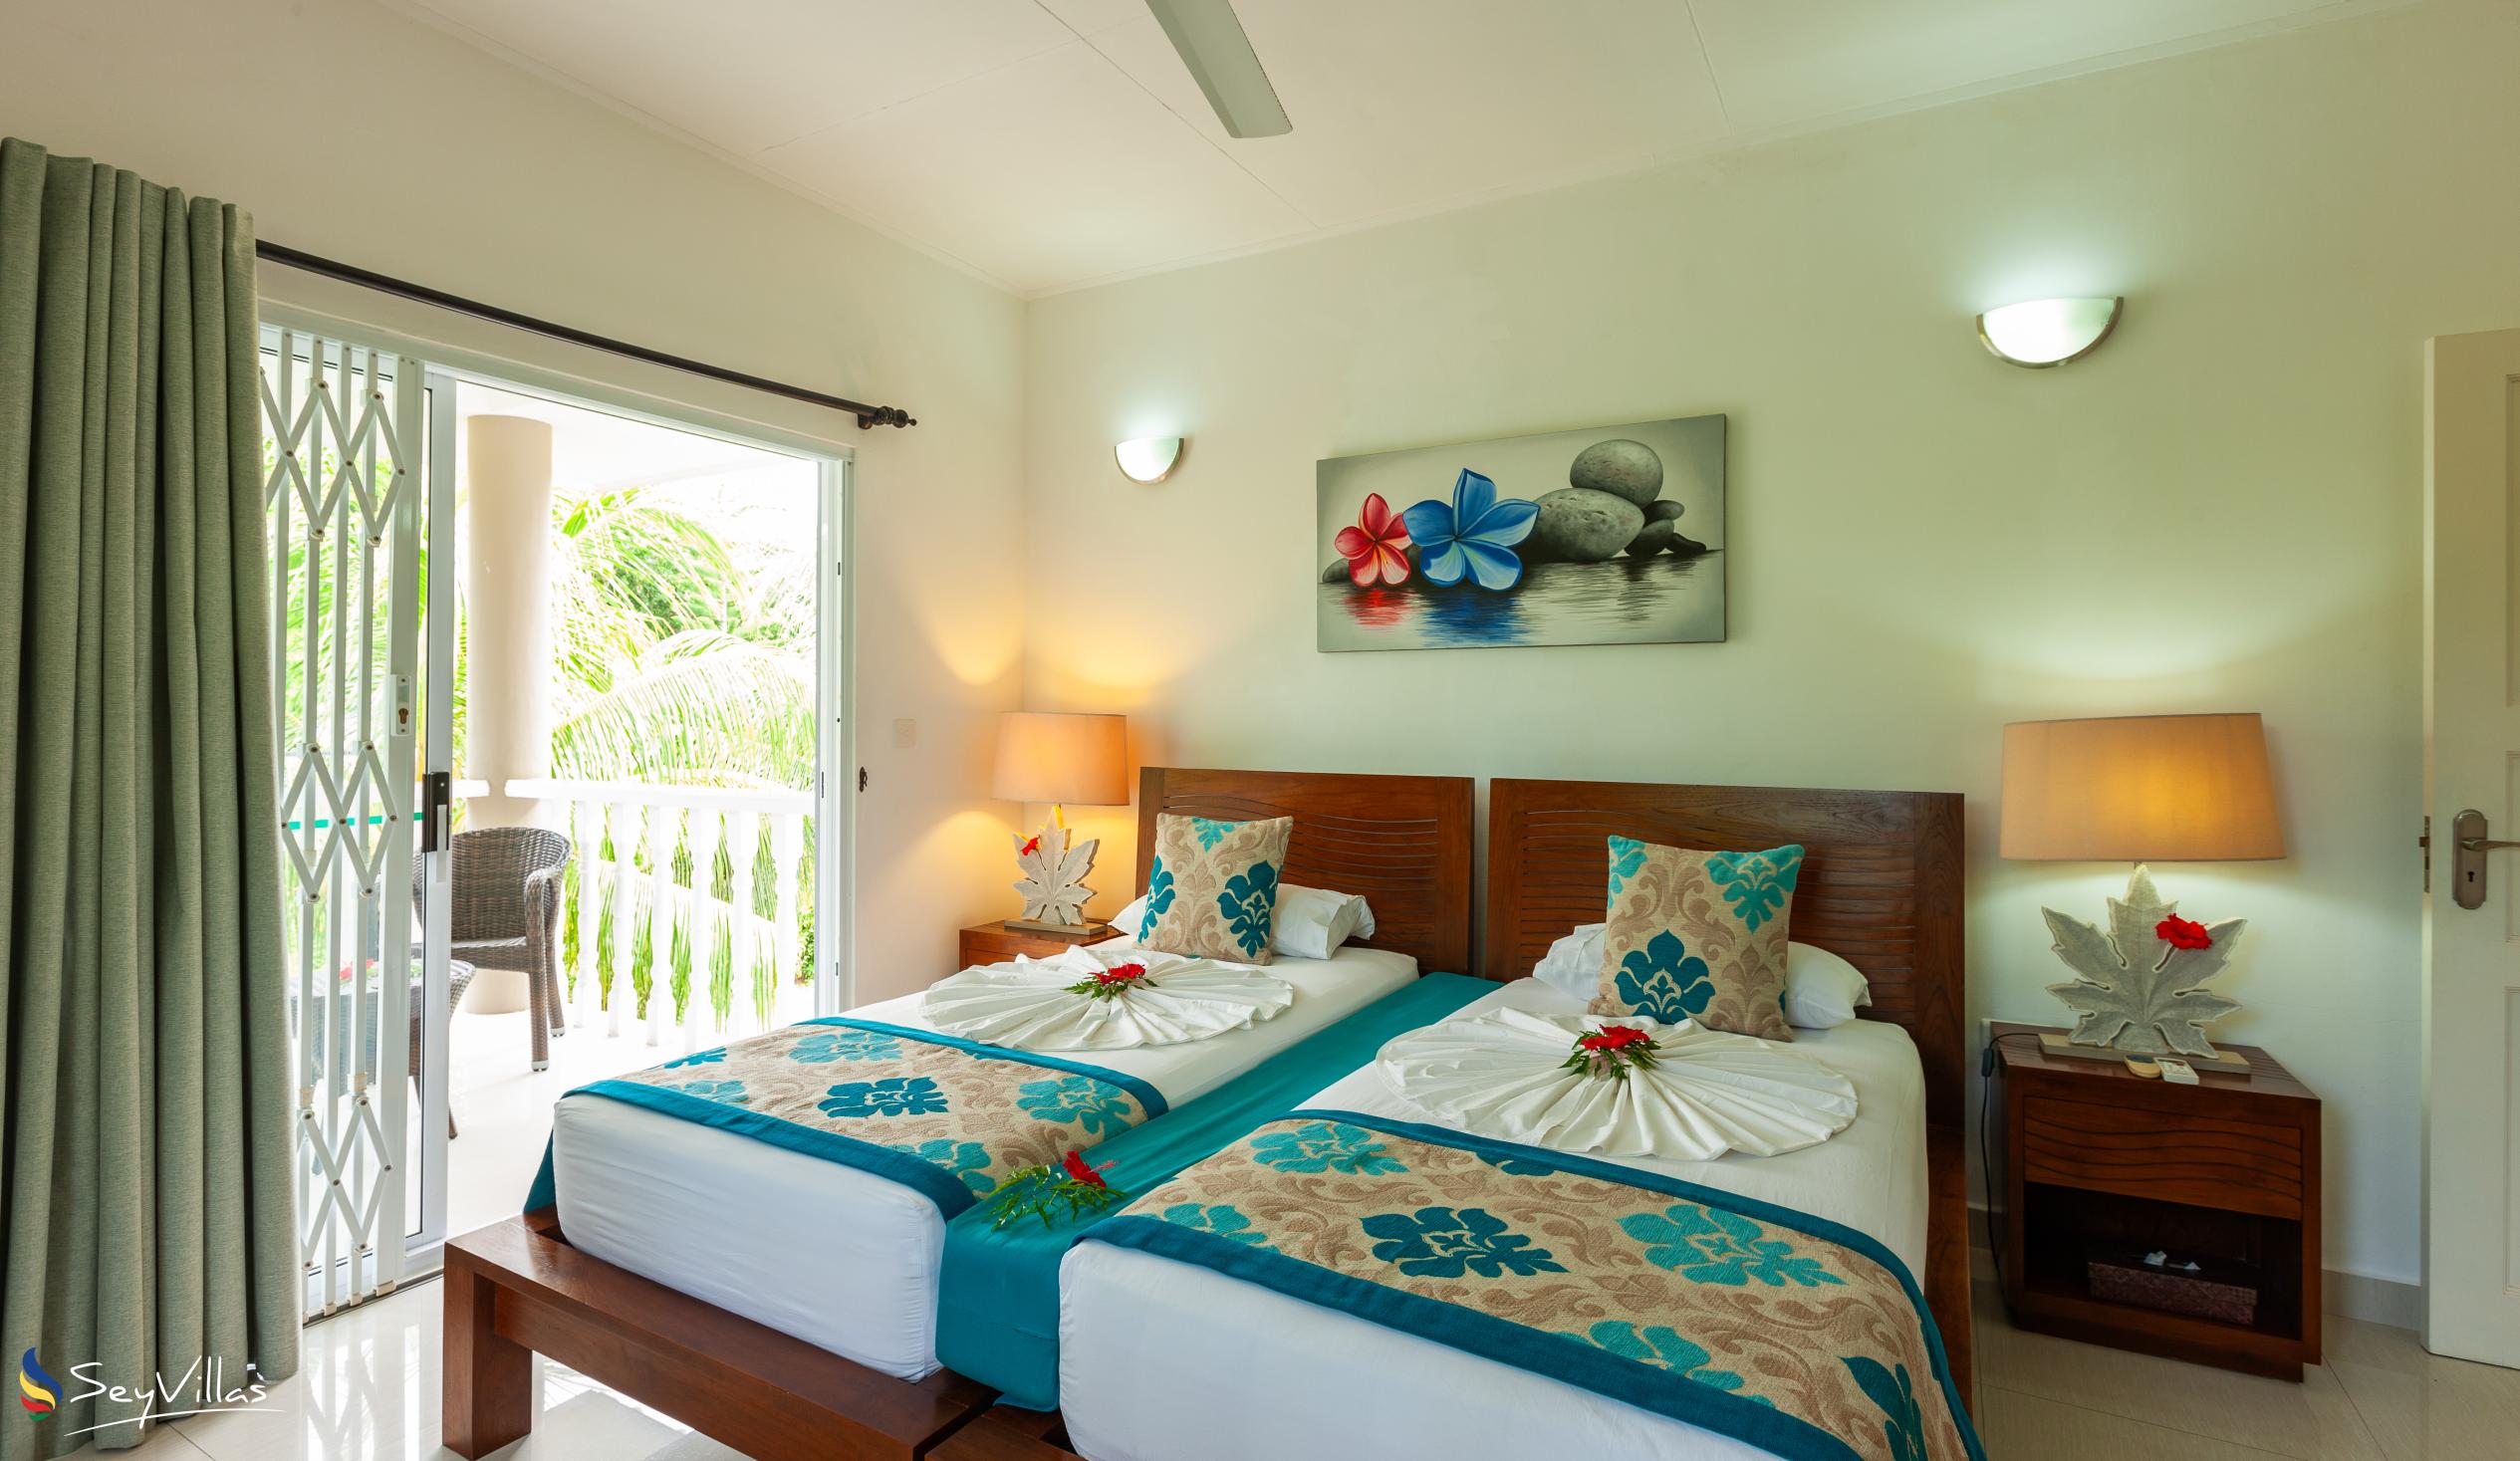 Foto 15: Casa Tara Villas - Appartement mit 2 Schlafzimmern - Praslin (Seychellen)